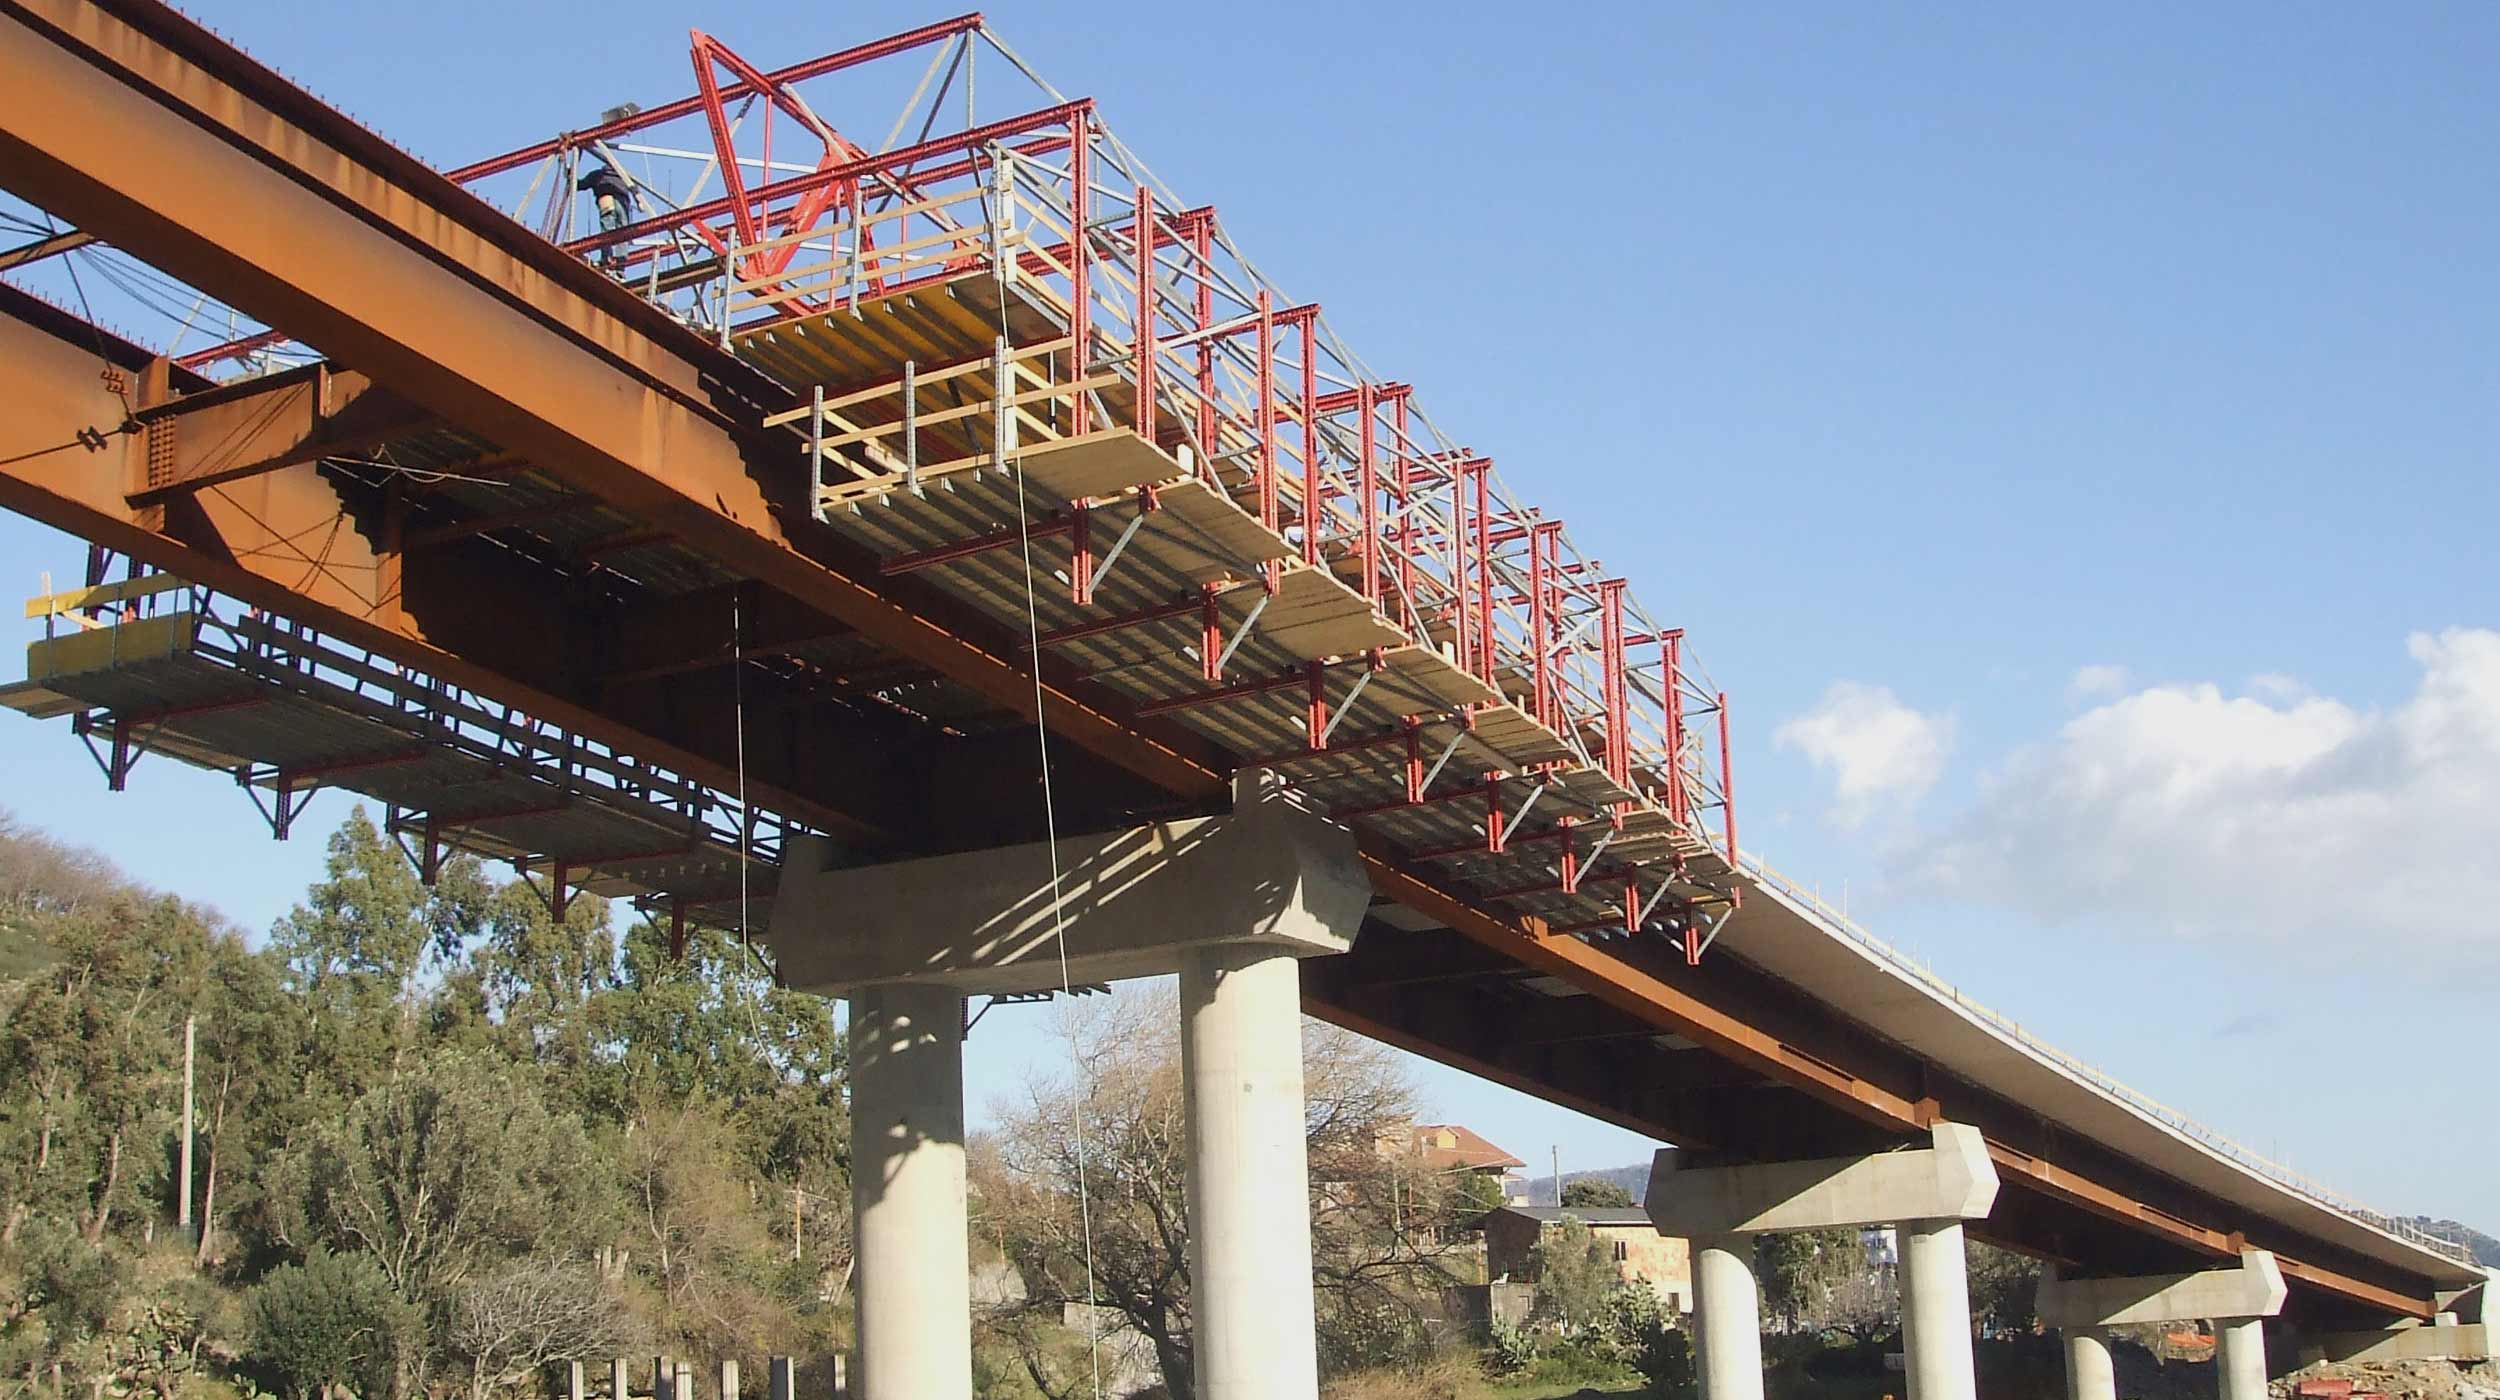 El puente mixto “Viaducto Platì” forma parte de la autopista Bovolino – Bagnara, que discurre en la región de Calabria, al sur de Italia.